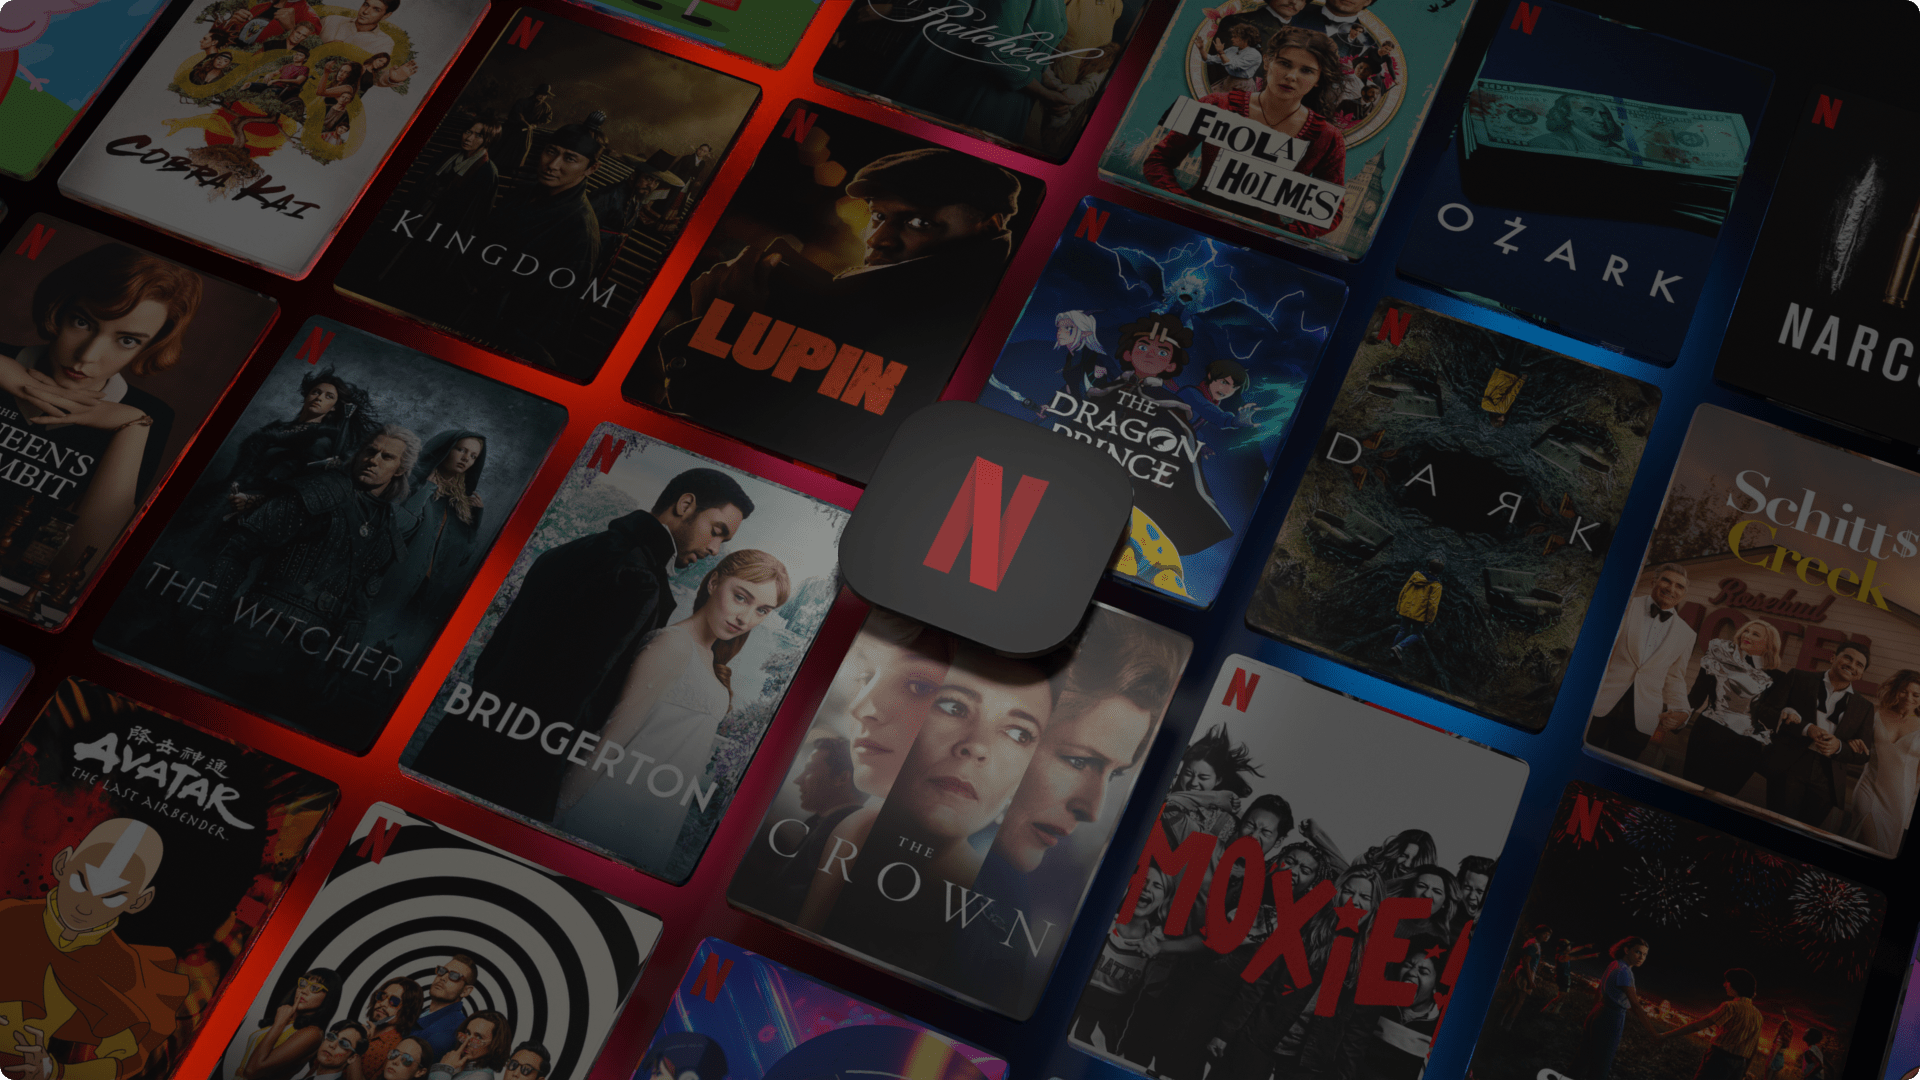 «Вміст недоступний у вашому місцезнаходження» для Netflix, Hulu та інших — що робити